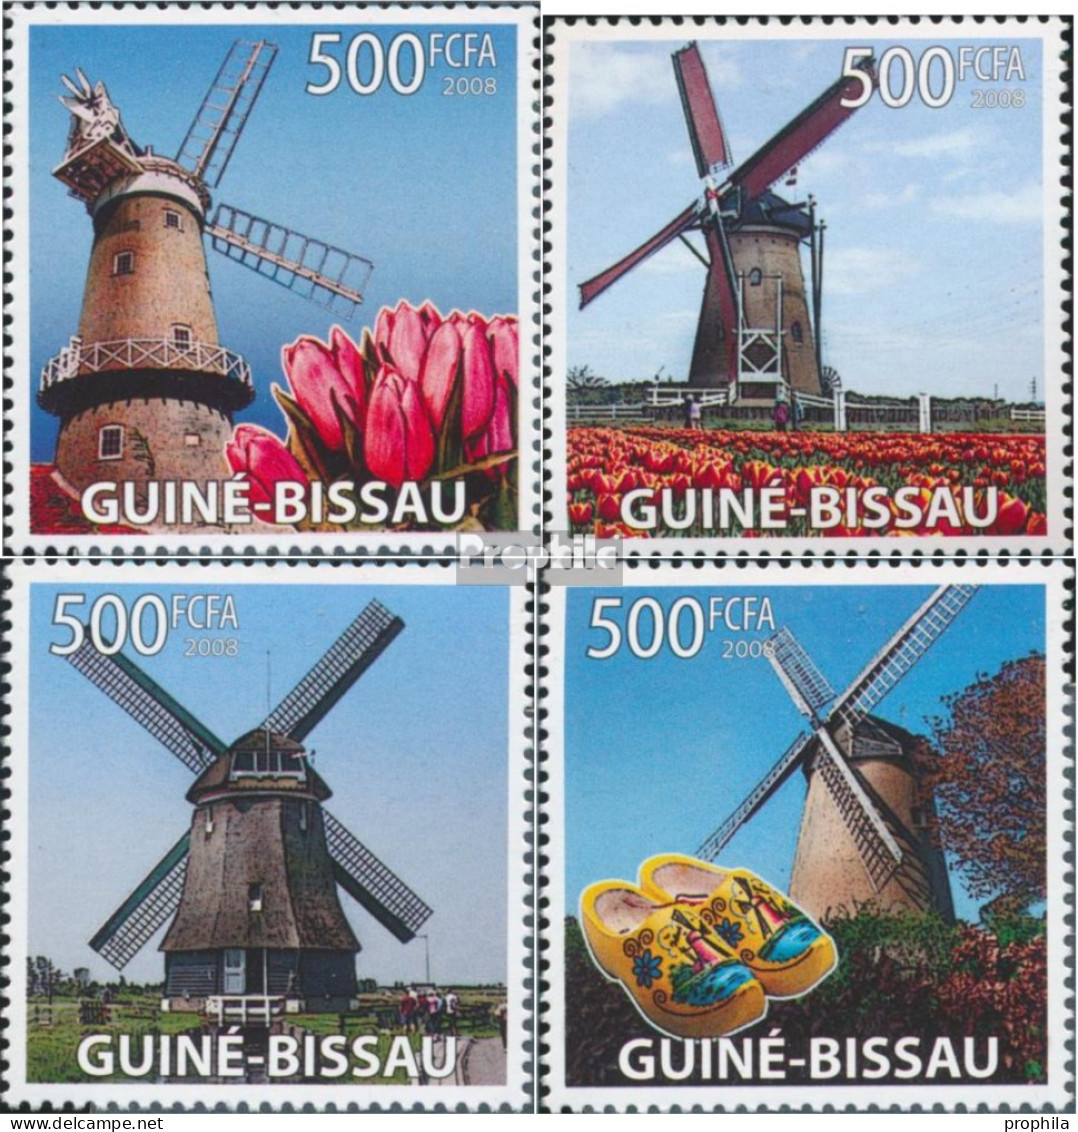 Guinea-Bissau 3884-3887 (kompl. Ausgabe) Postfrisch 2008 Windmühlen, Tulpen - Guinea-Bissau